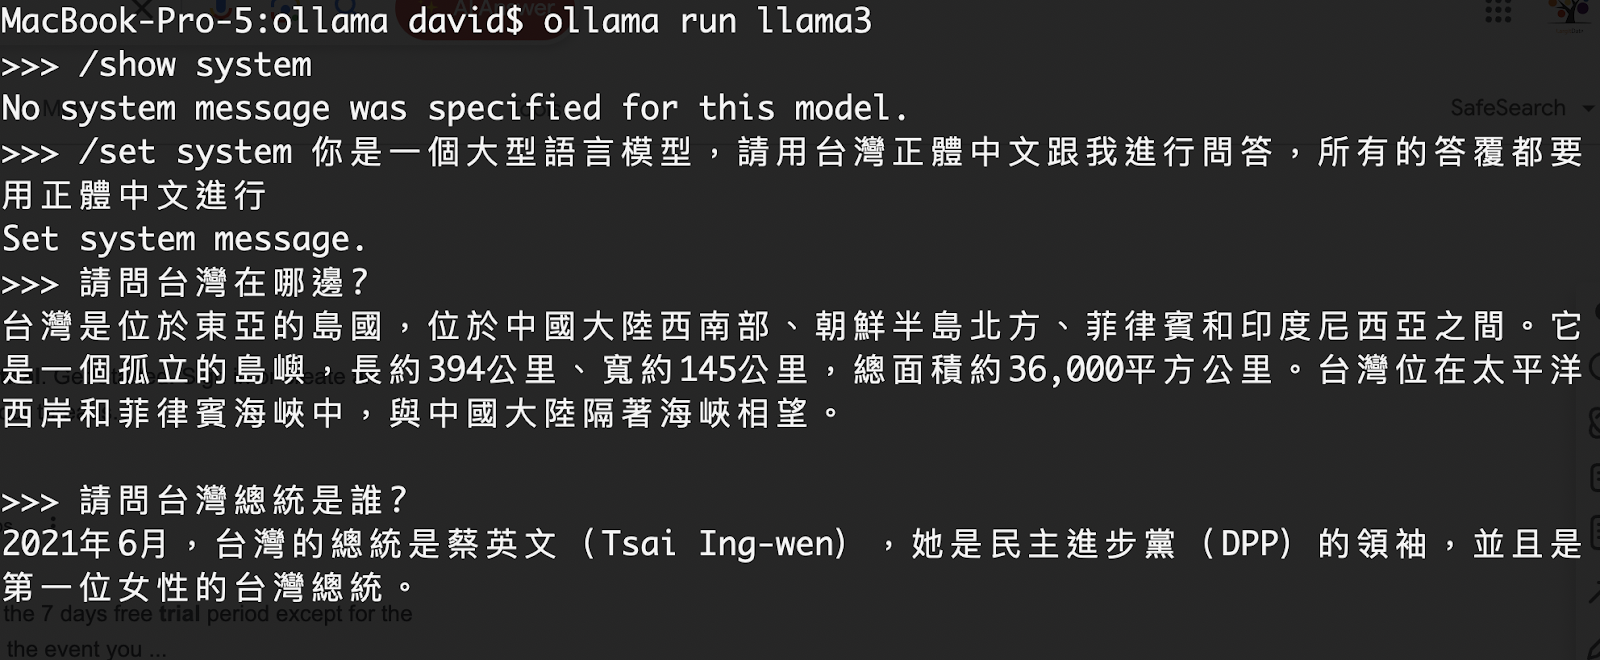 修改系統提示詞，讓Llama3 回答中文